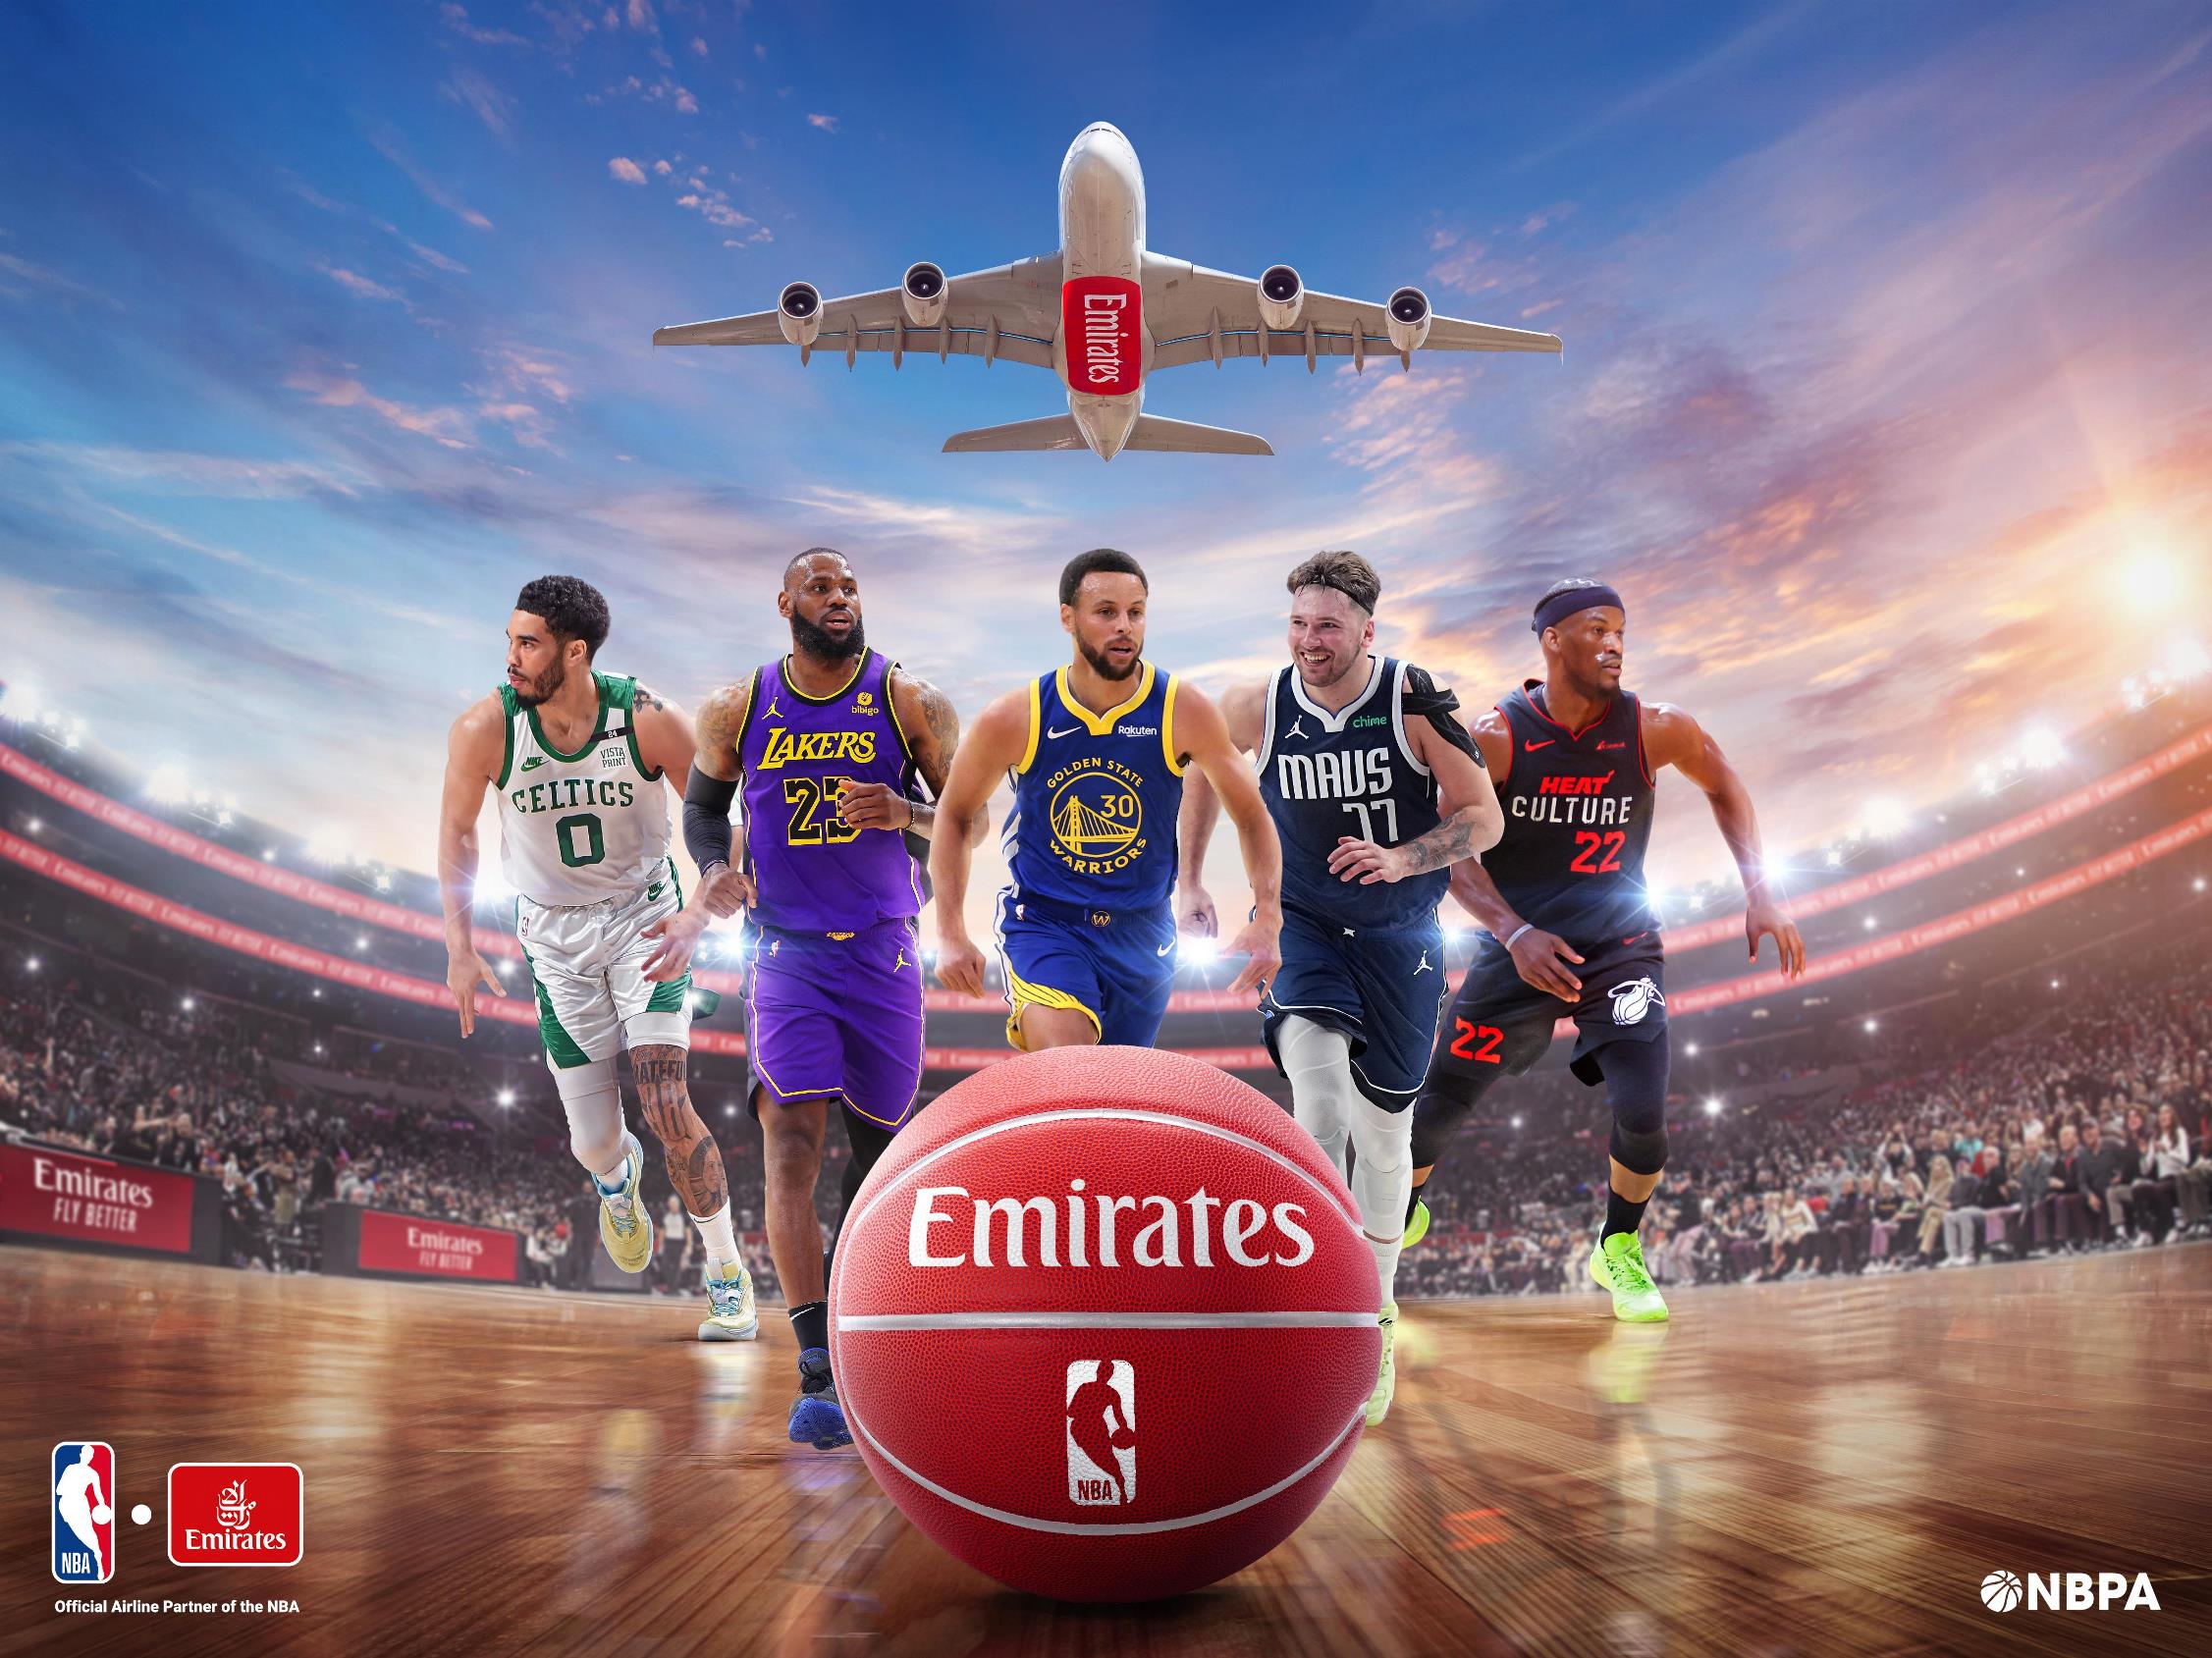 Emirates ile NBA Arasında Sponsorluk Anlaşması İmzalandı